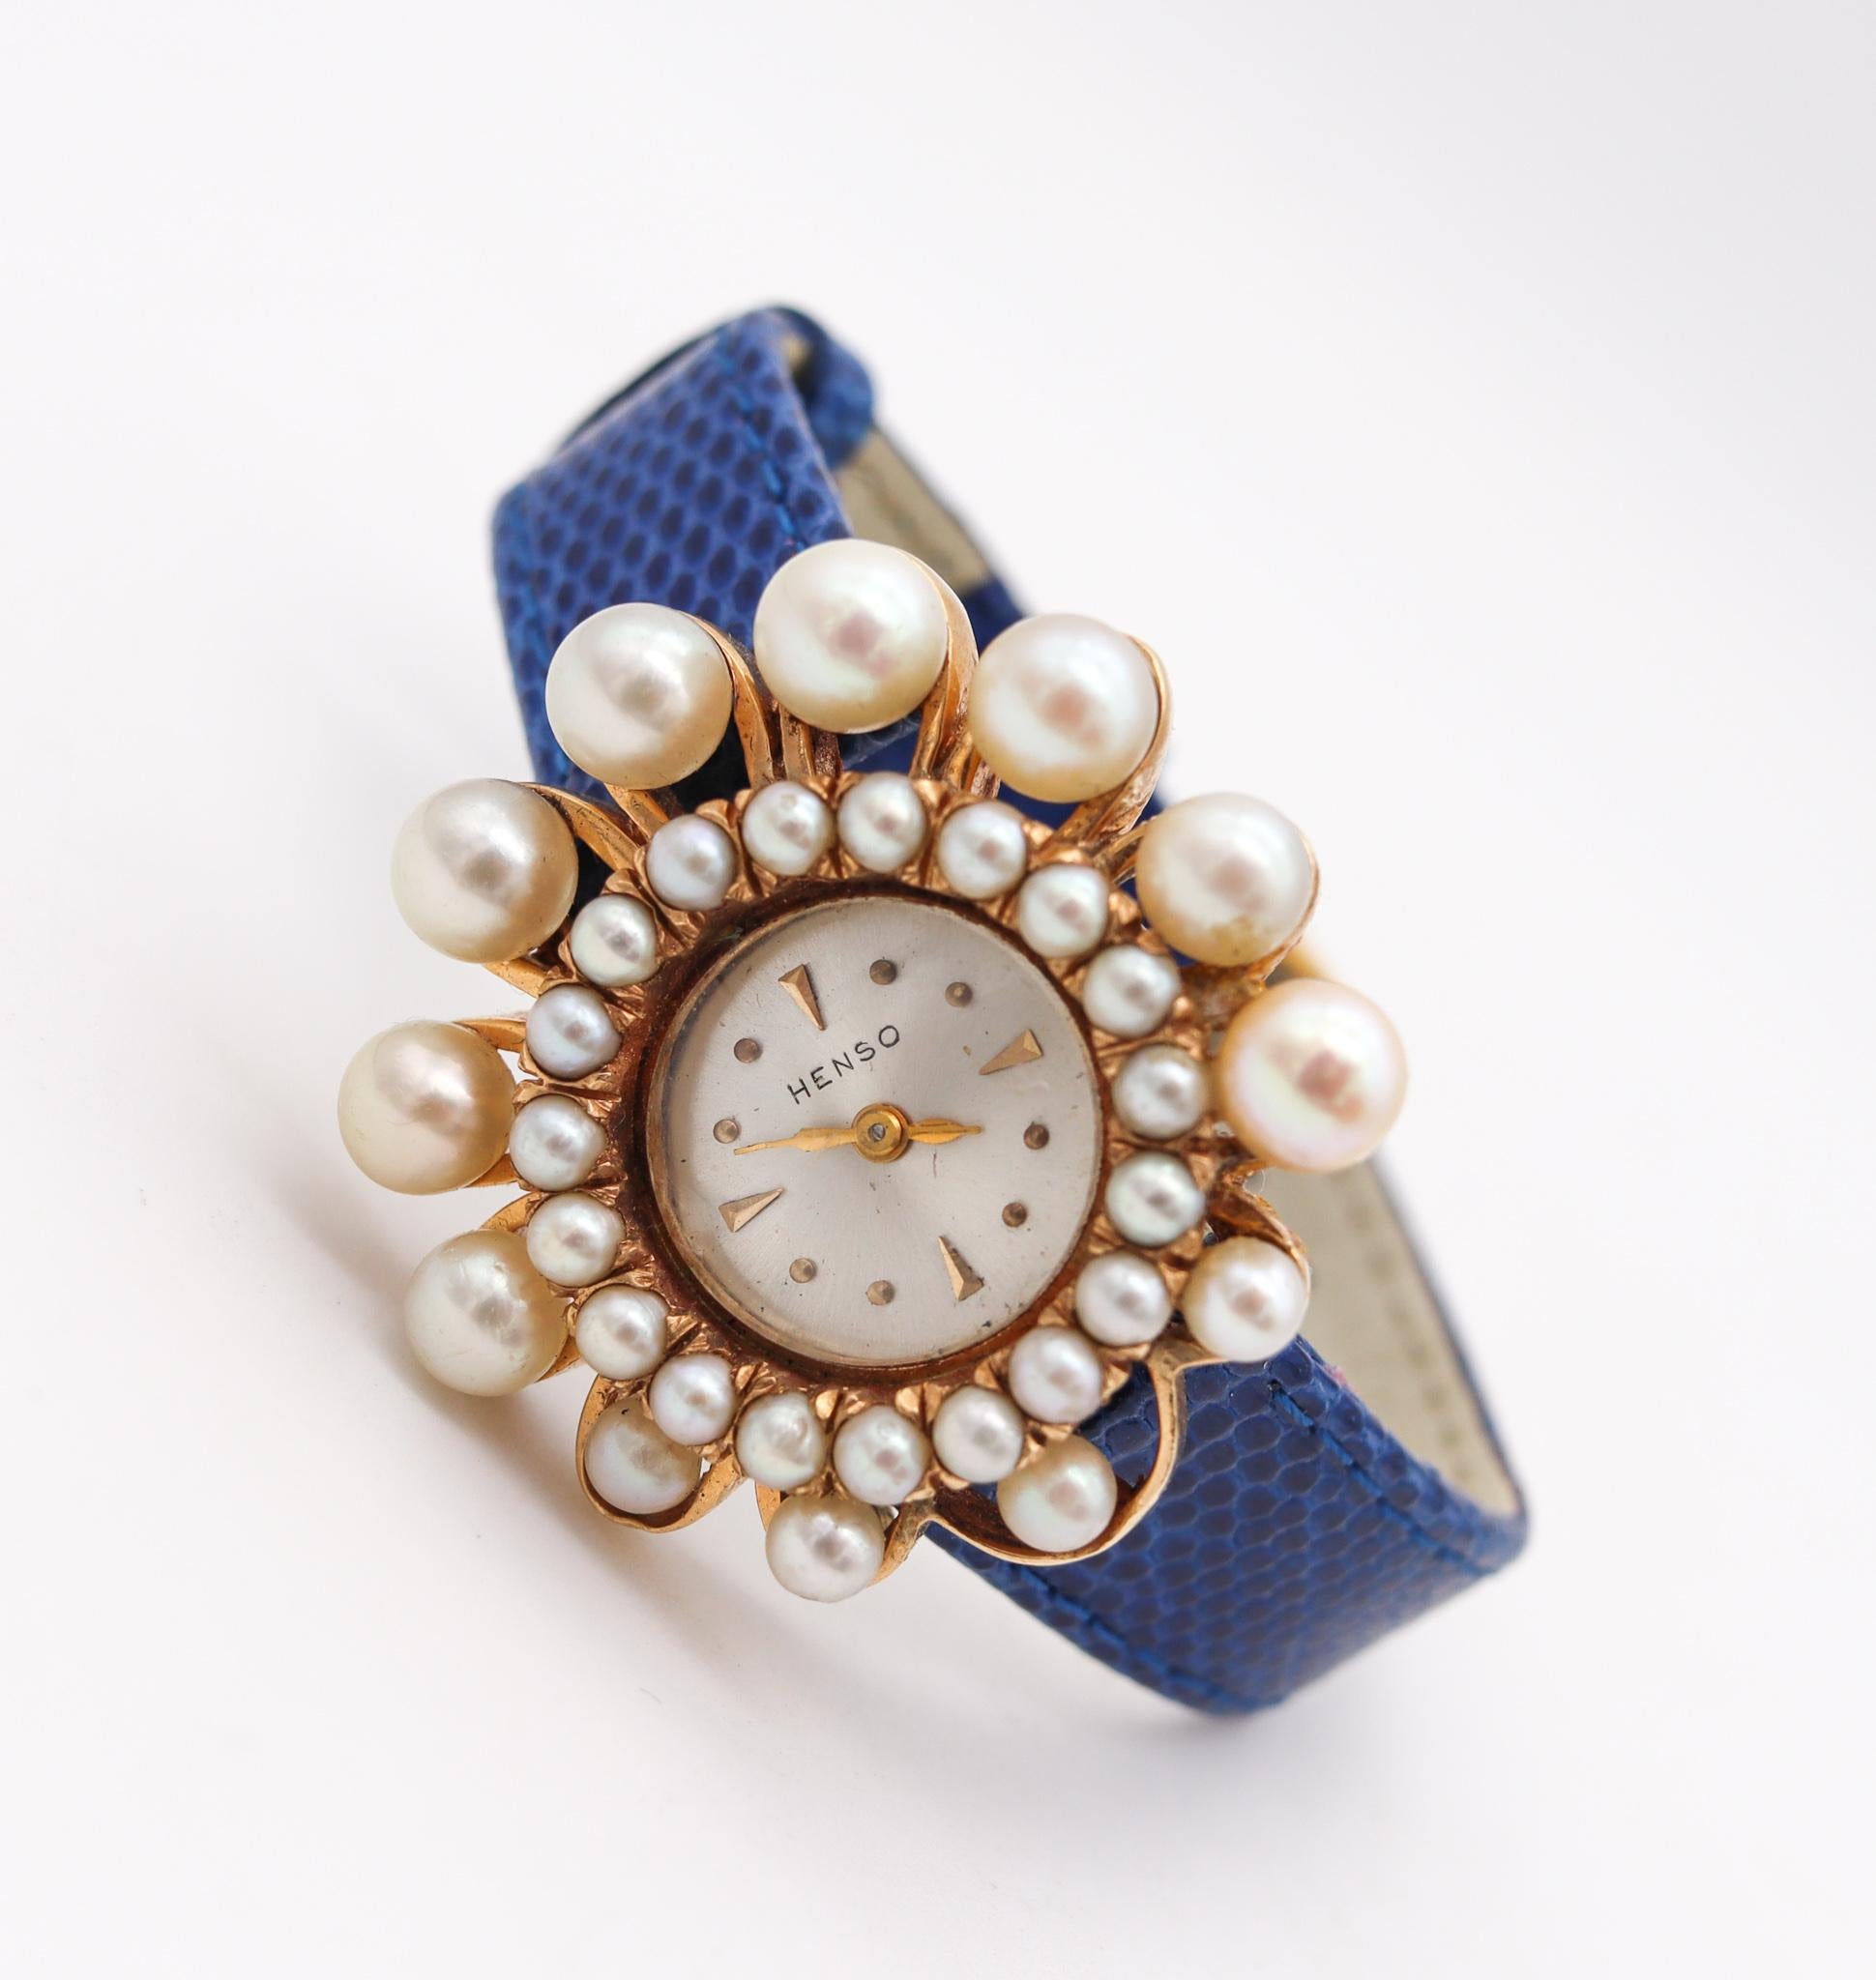 Montre-bracelet rétro moderniste conçue par Henso Watch Co.

Montre-bracelet pour femme très élégante, créée au milieu du siècle dernier par la société Henso Watch Co. Cette pièce a une allure formidable et un grand attrait visuel. Elle a été